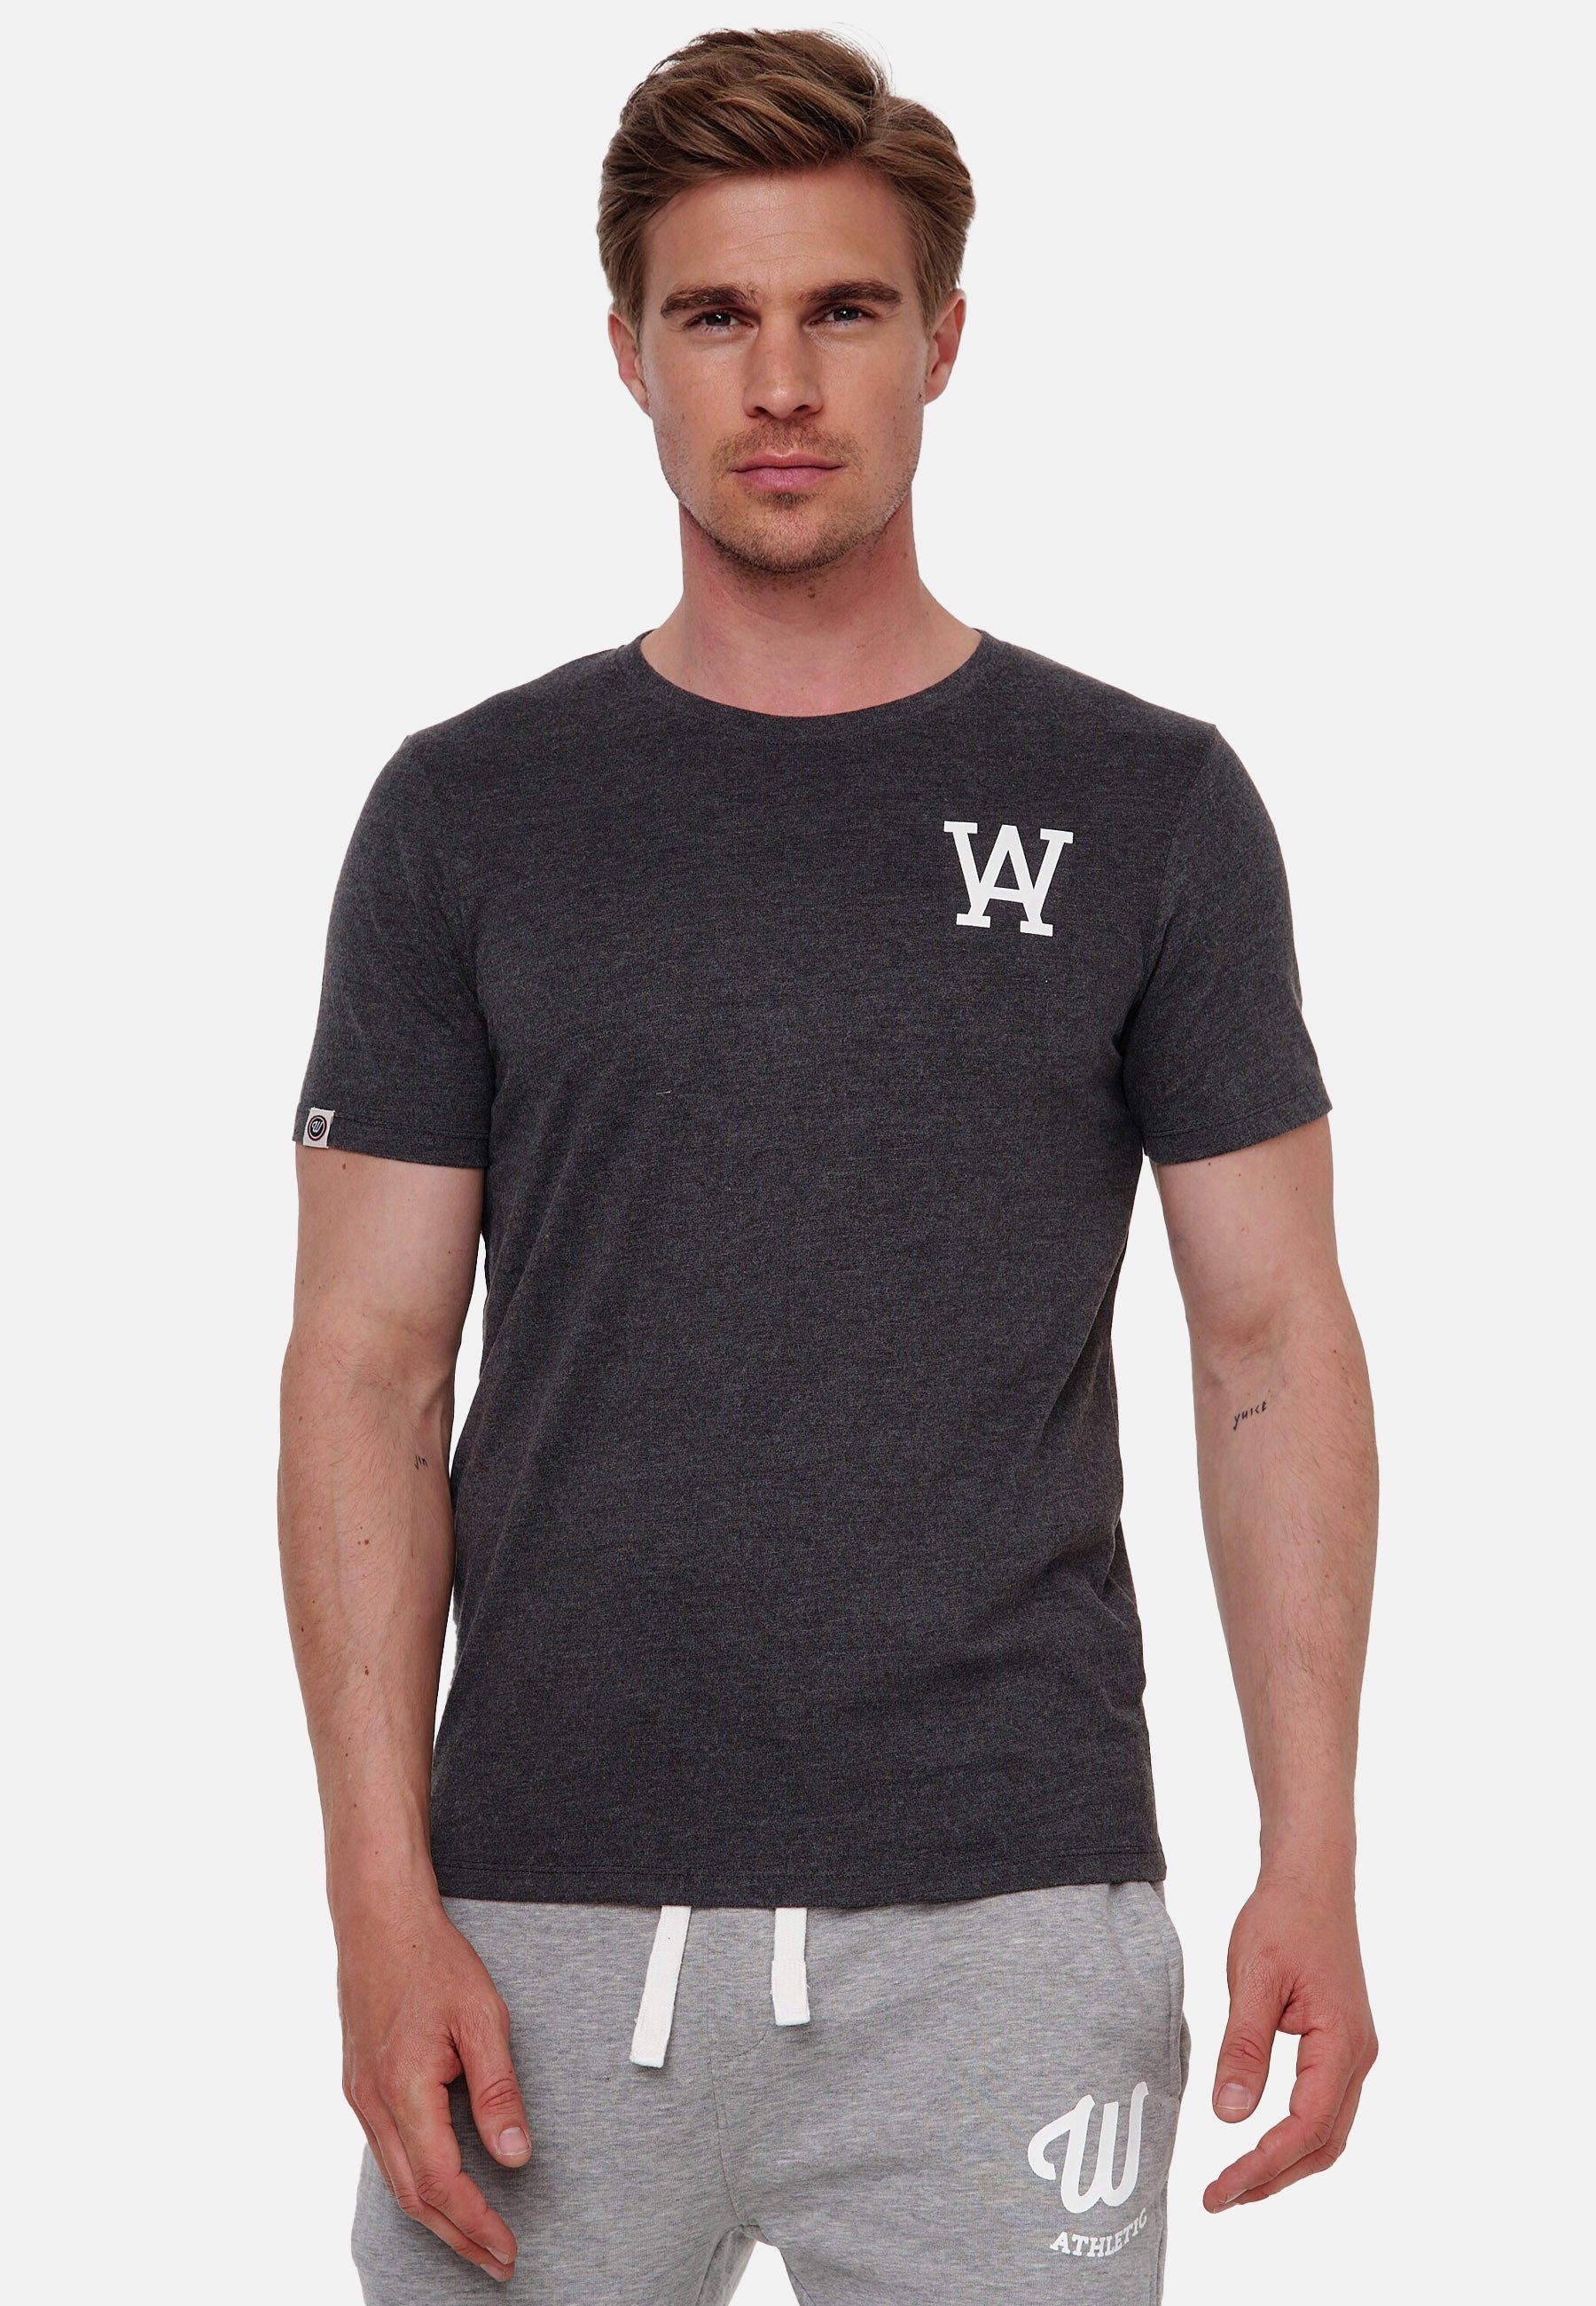 Woldo Athletic T-Shirt T-Shirt W Logo dunkelgrau-weiß